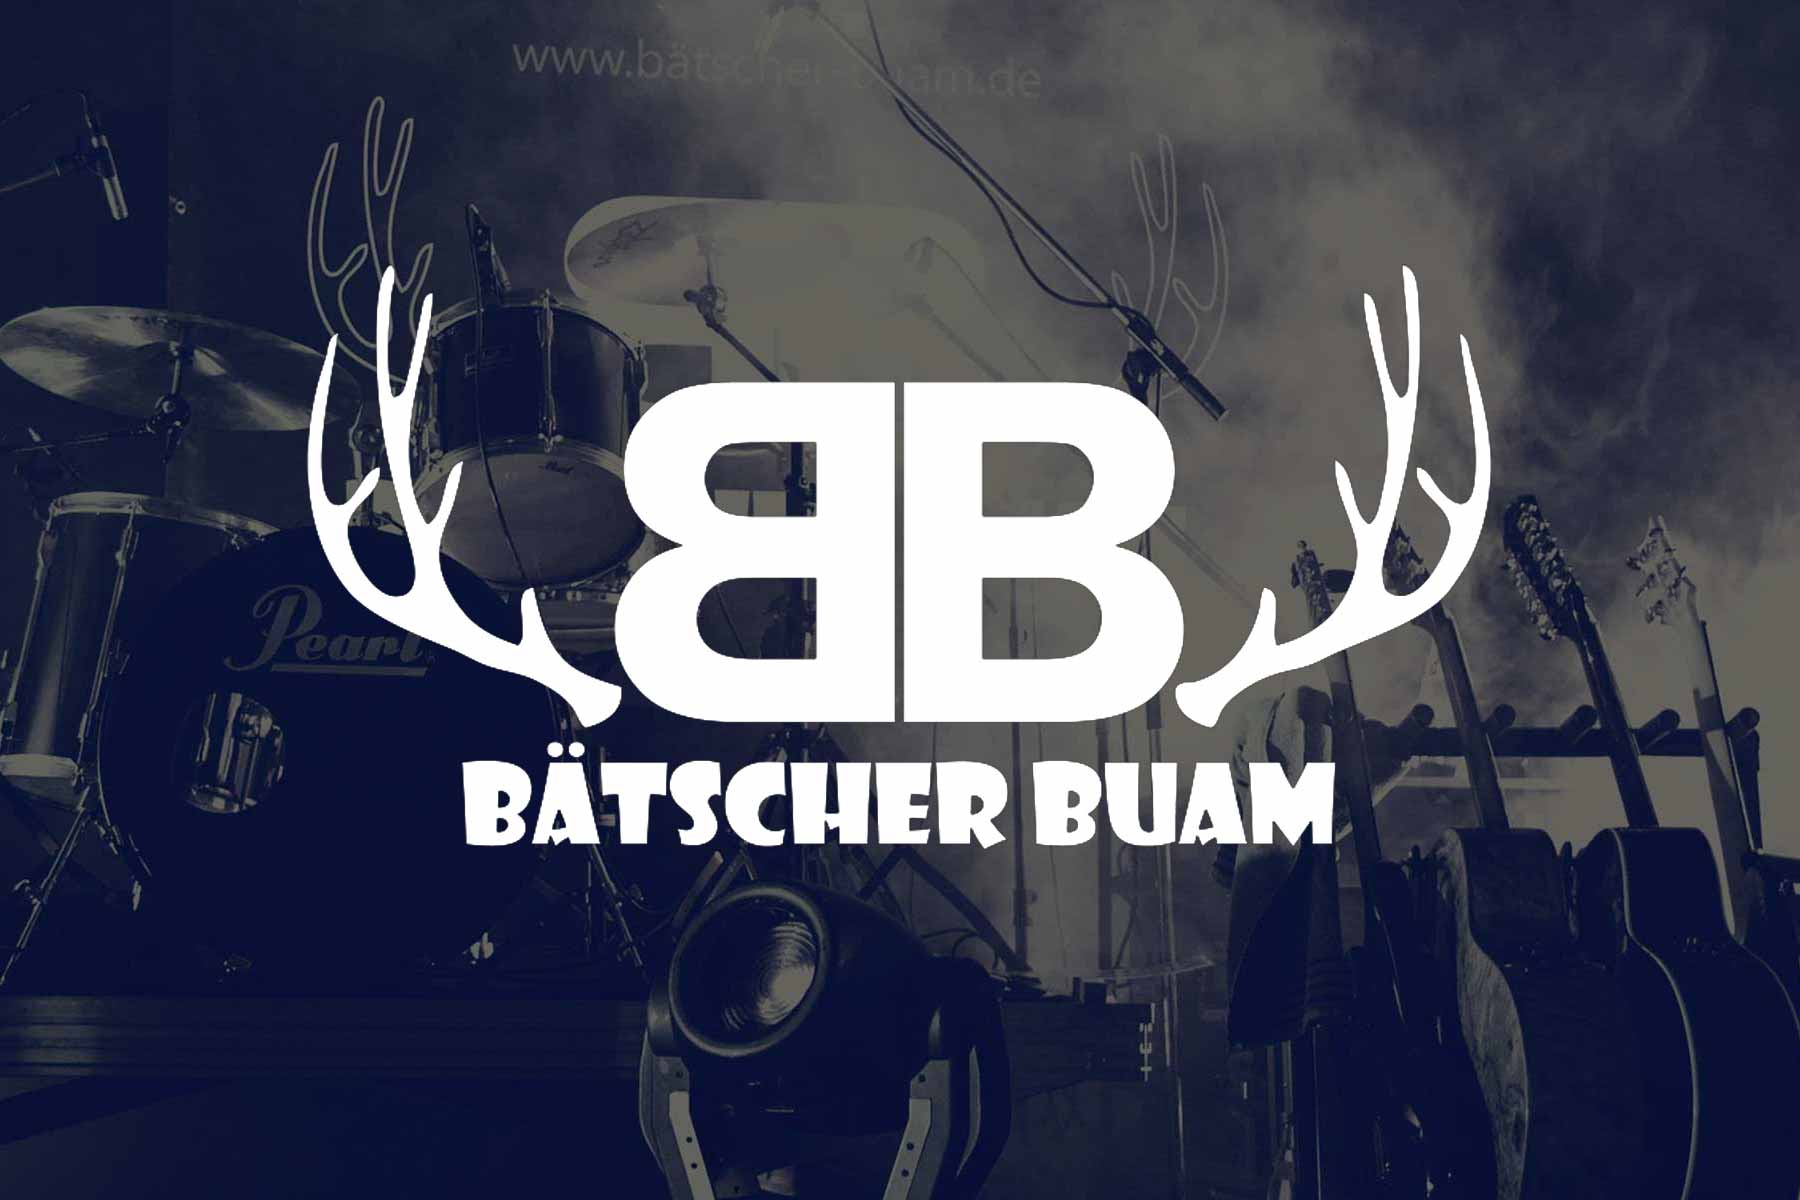 (c) Baetscher-buam.de